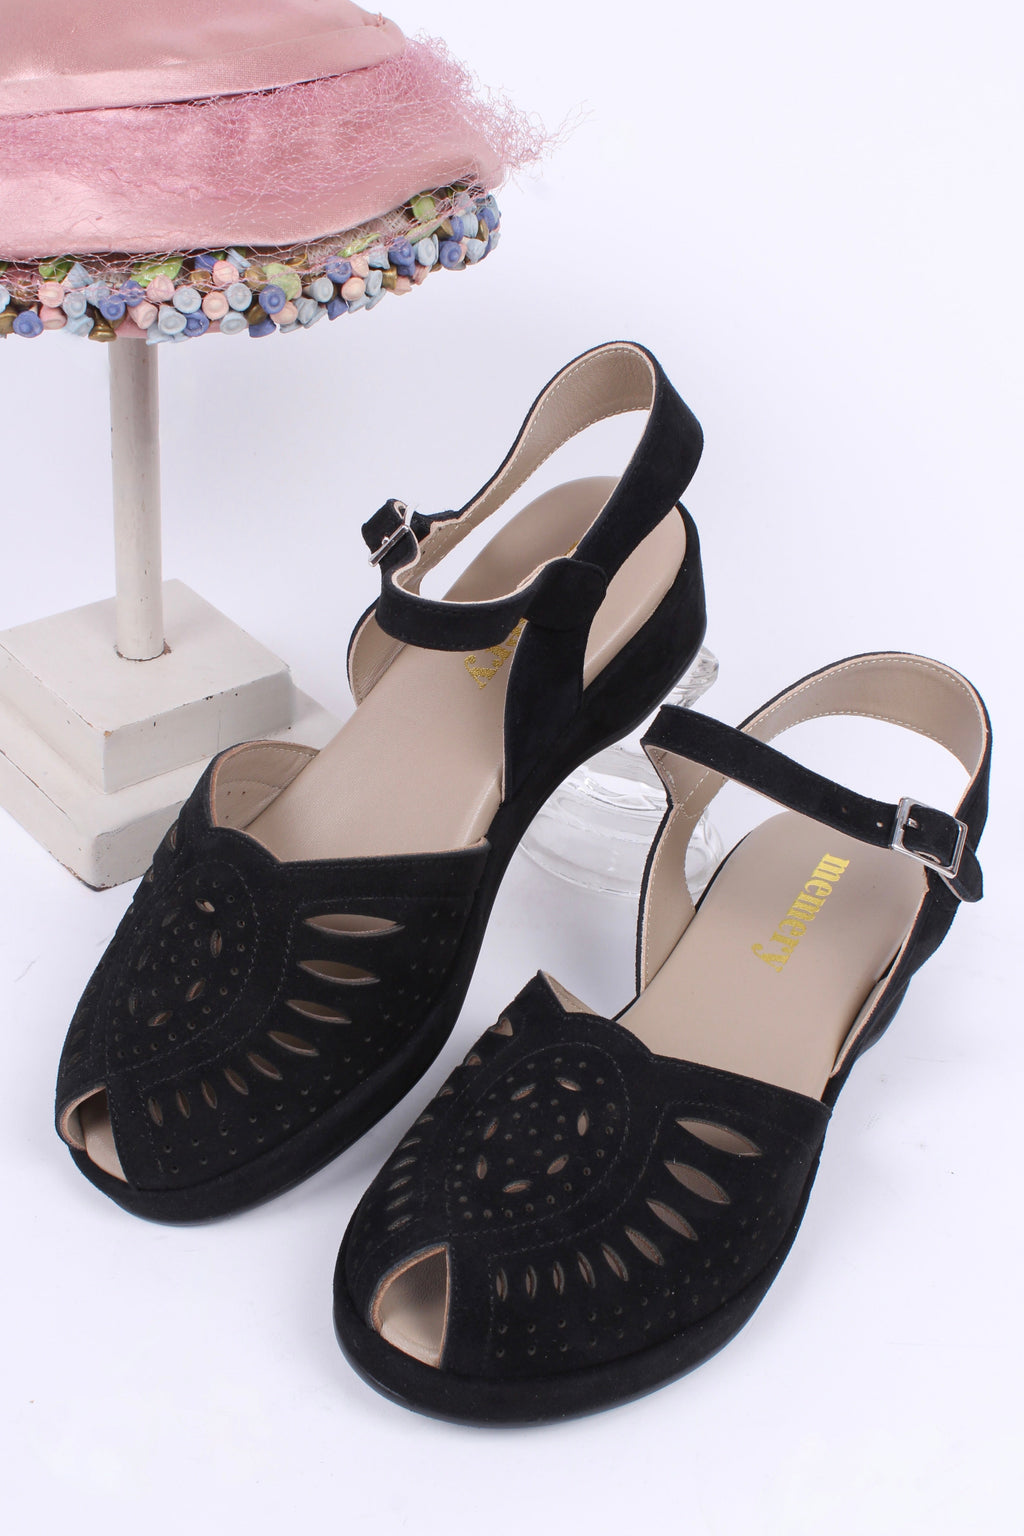 VEGAN - Bløde 1940'er / 1950'er inspirerede sandaler - Sort - Ella